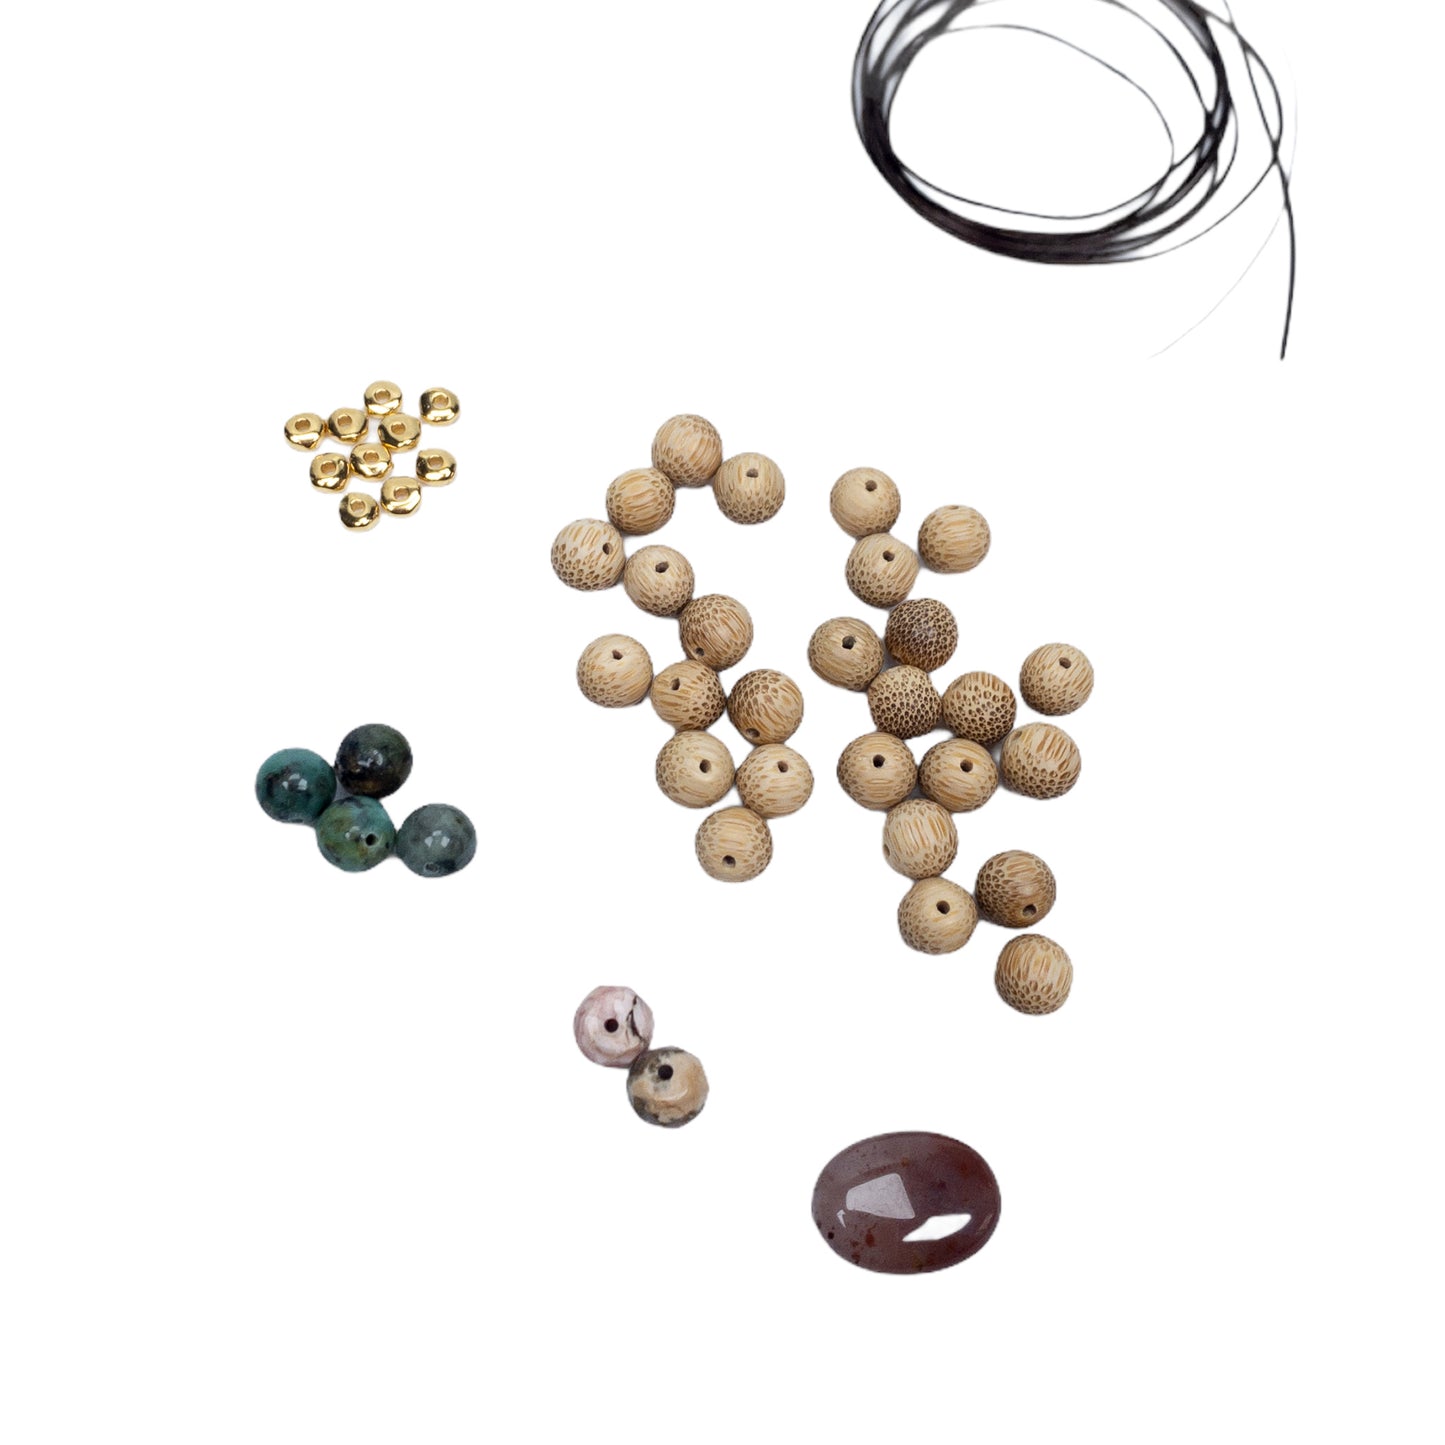 Bamboo Baby: Mixed Gemstone & Bamboo Stretchy Bracelet - Kit or Finished Bracelet